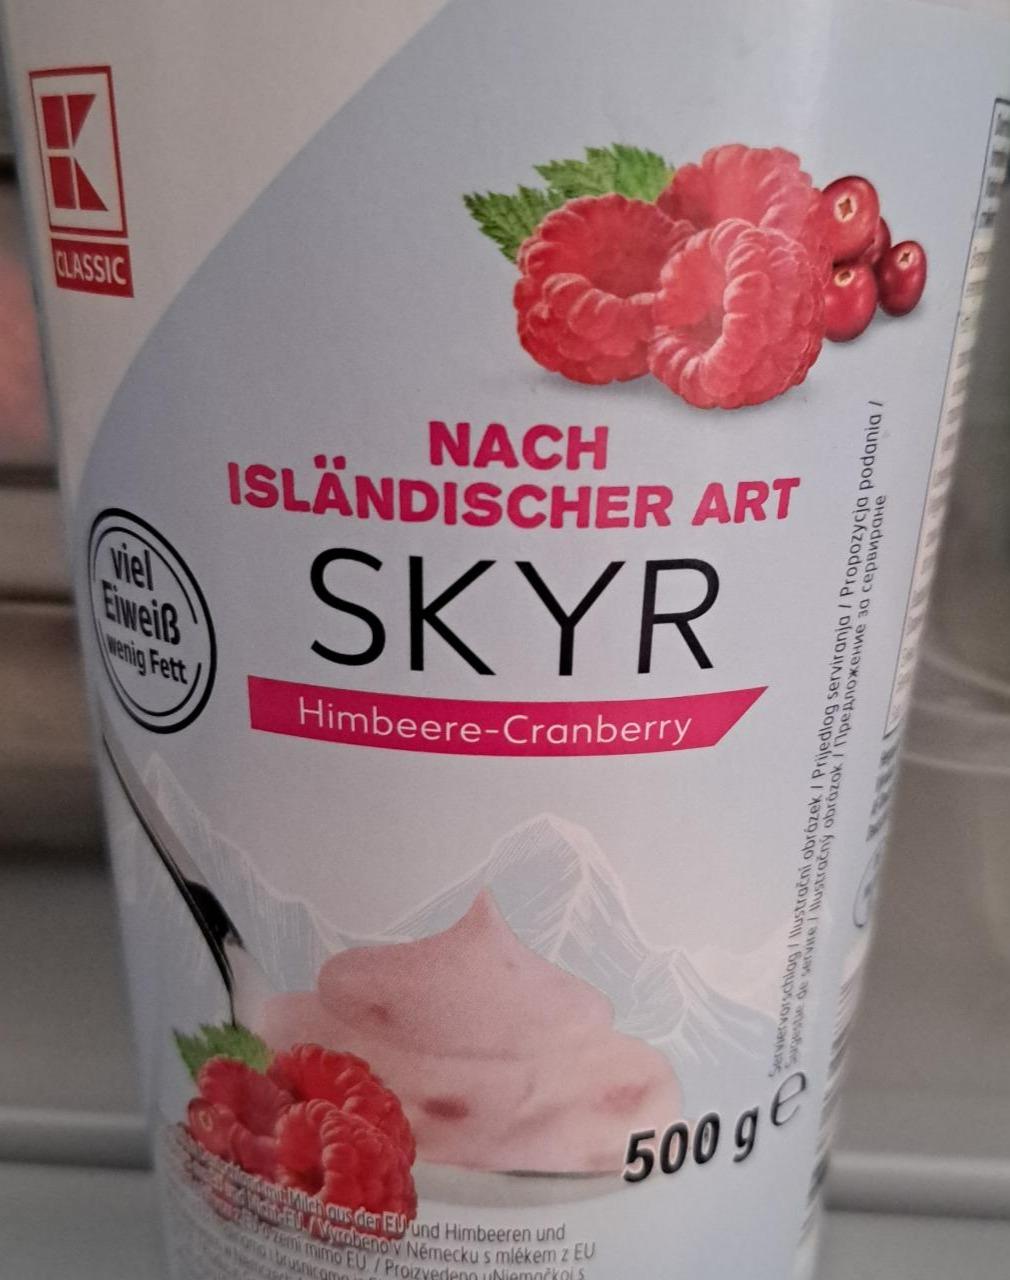 Fotografie - Skyr nach isländischer art Himbeere-Cranberry K-Classic